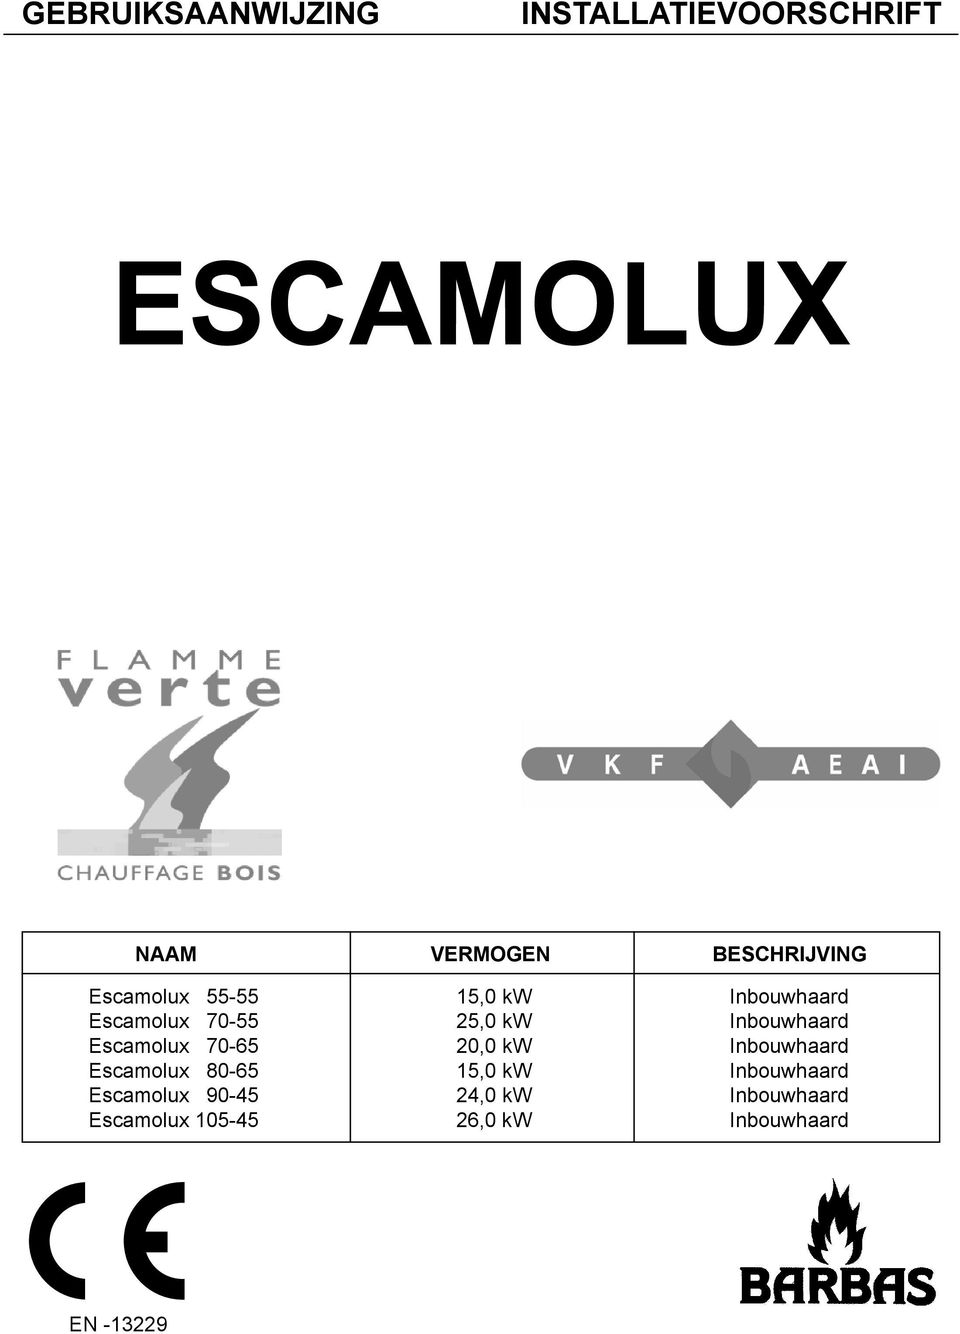 Inbouwhaard Escamolux 70-65 20,0 kw Inbouwhaard Escamolux 80-65 15,0 kw